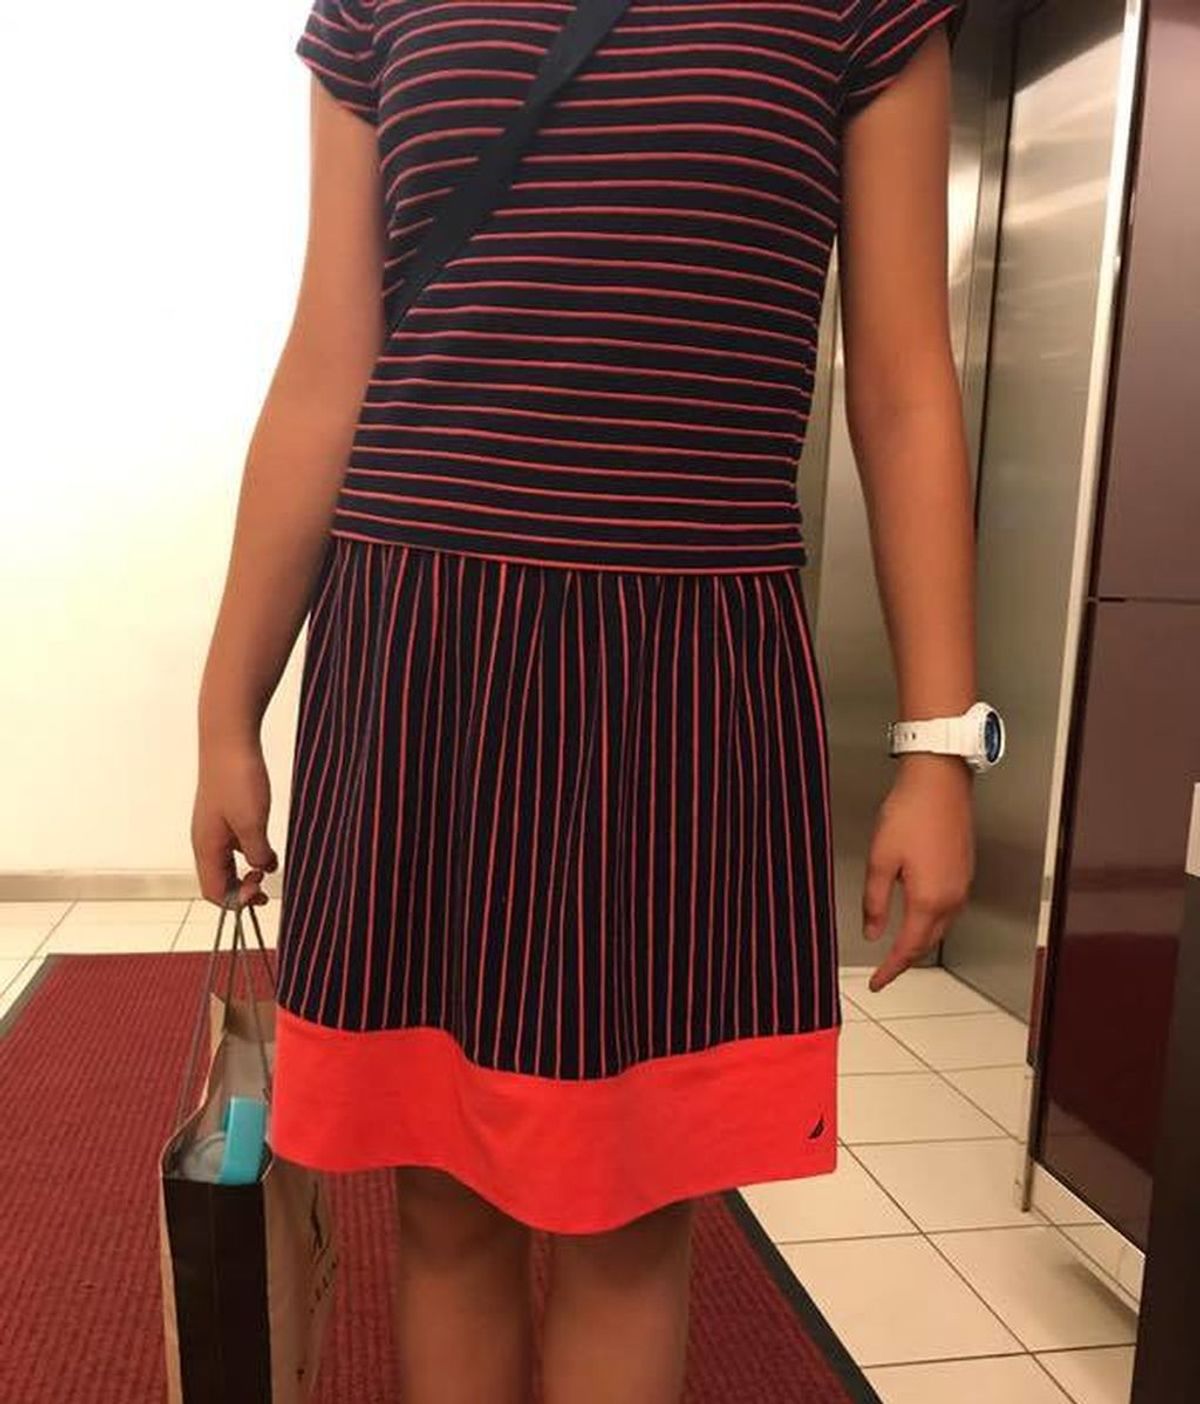 Con 12 años, expulsada de un torneo de ajedrez por llevar un vestido 'seductor'